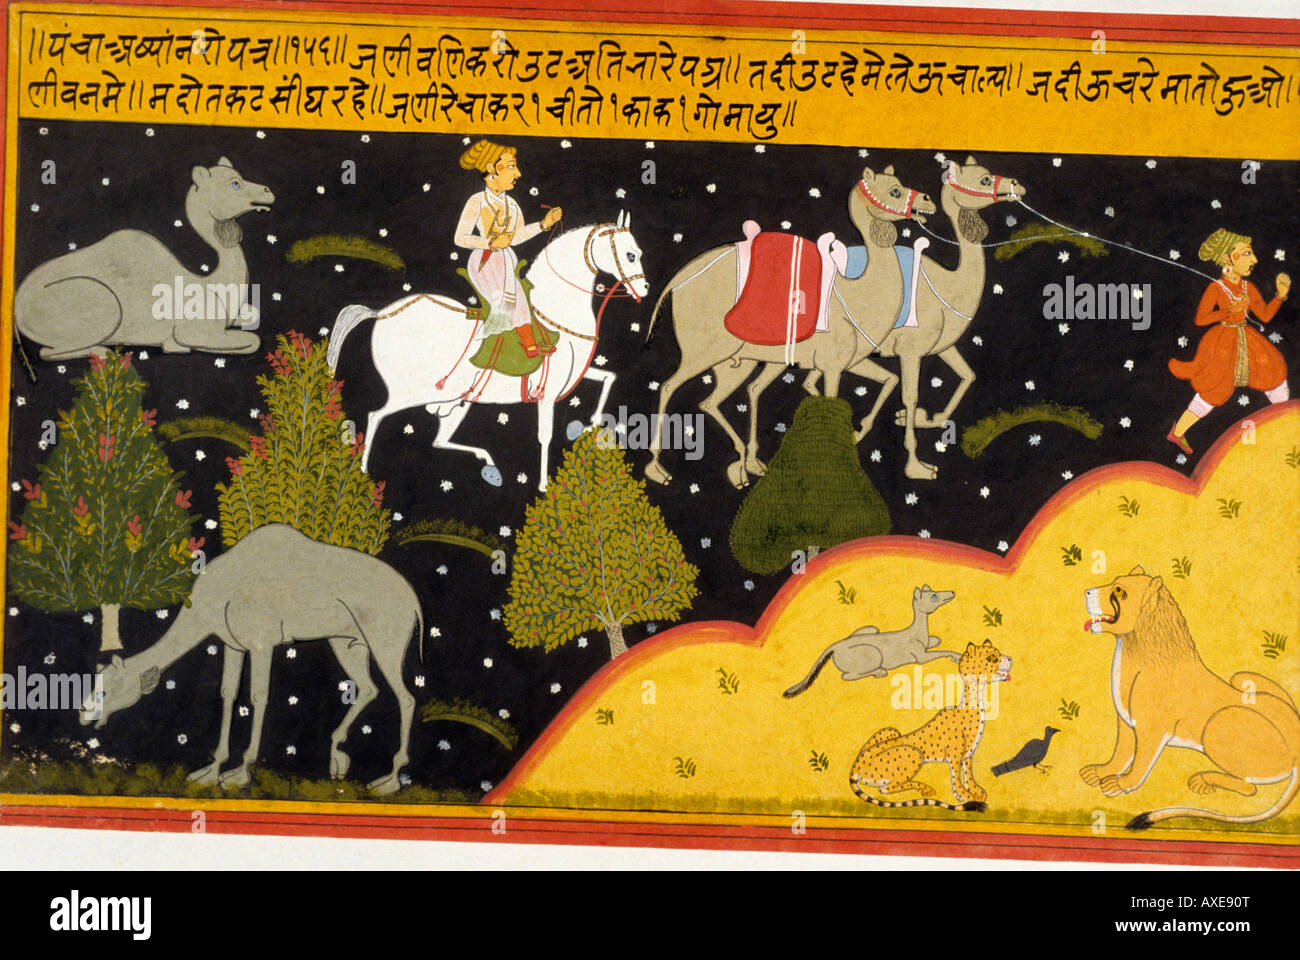 Mewar (Inde) histoire de la chamelle lnt c 1700 kanoria. Peinture miniature indienne, Rajasthan Inde Banque D'Images